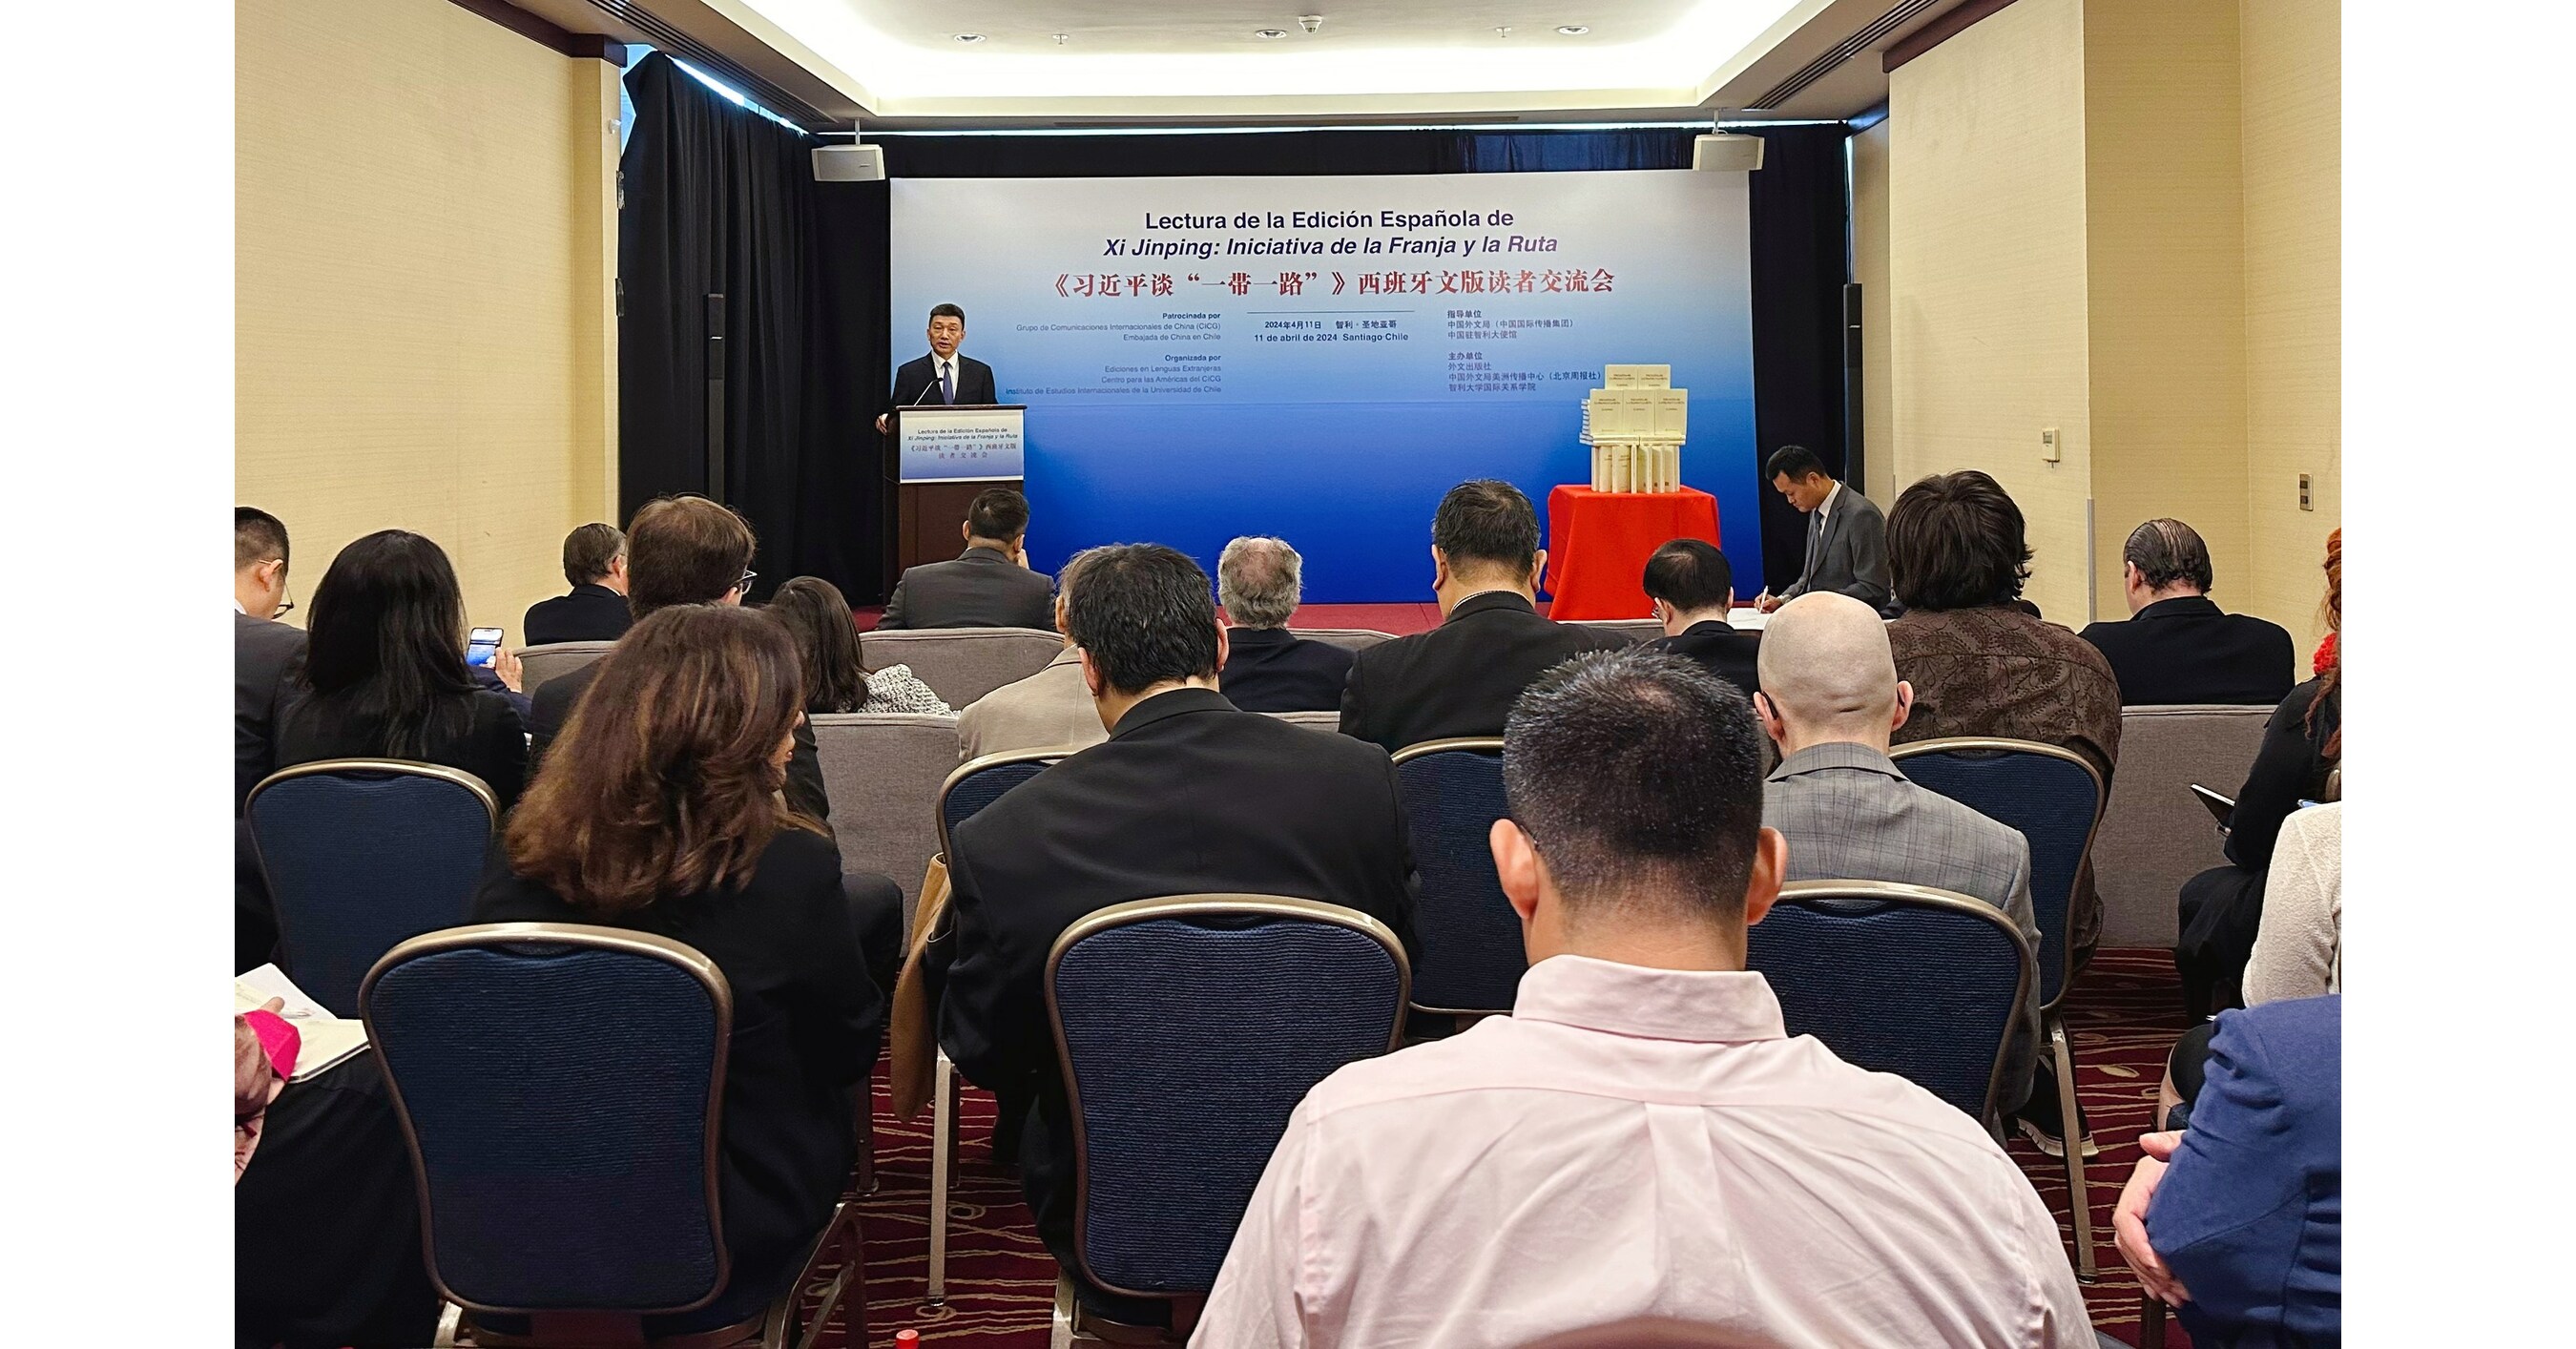 Xi Jinping informa e inspira a lectores en Chile sobre la Iniciativa de la Franja y la Ruta